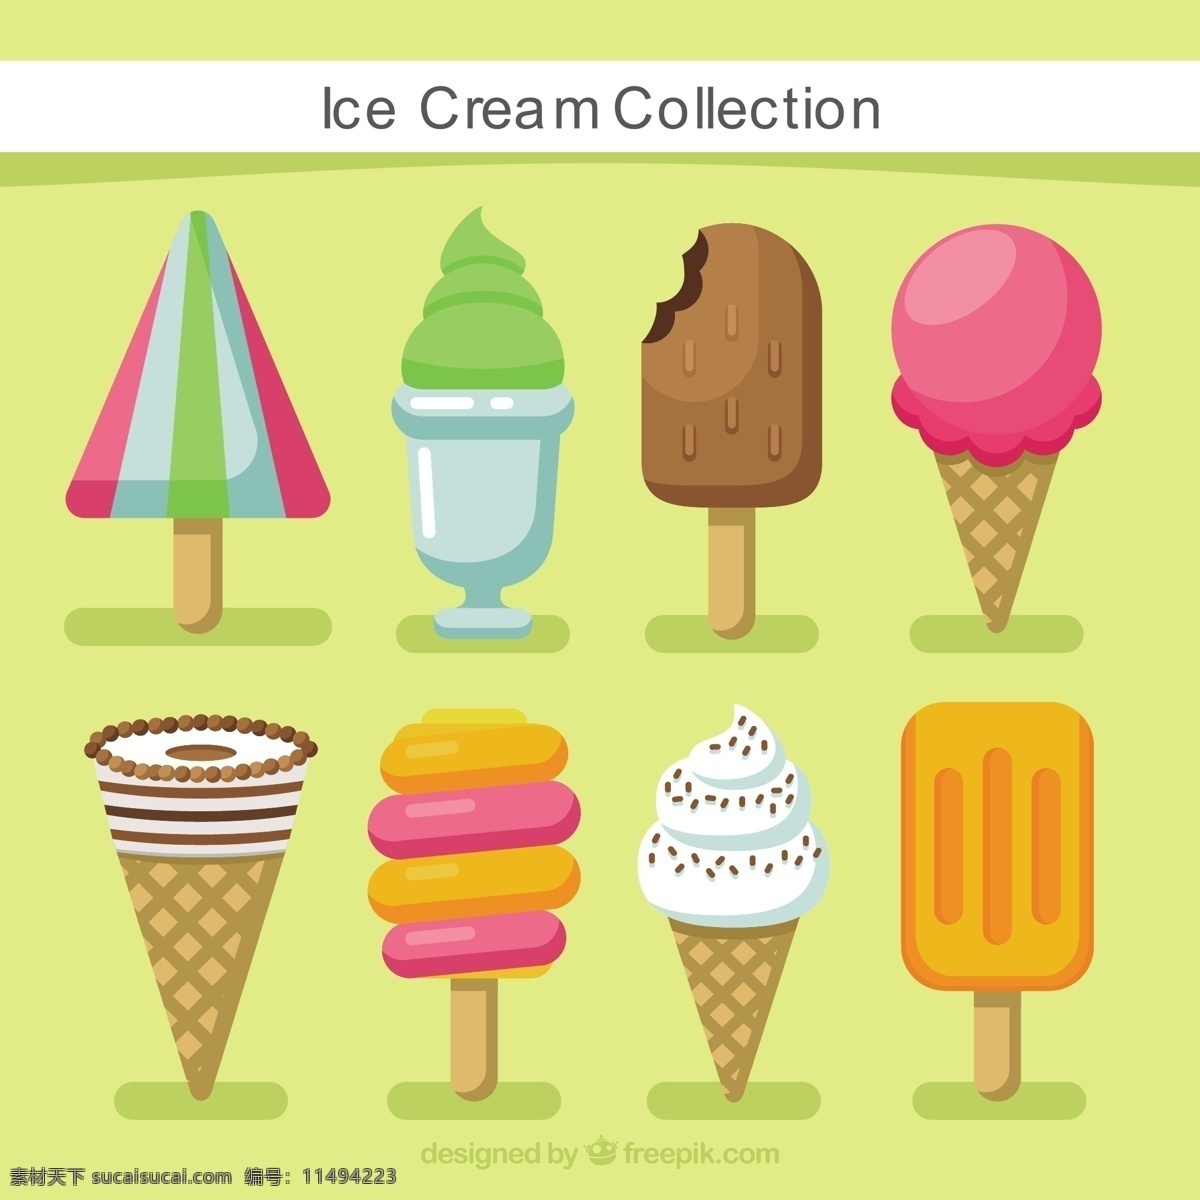 彩色 冰淇淋 图标 平面设计 冰淇淋图标 平面设计素材